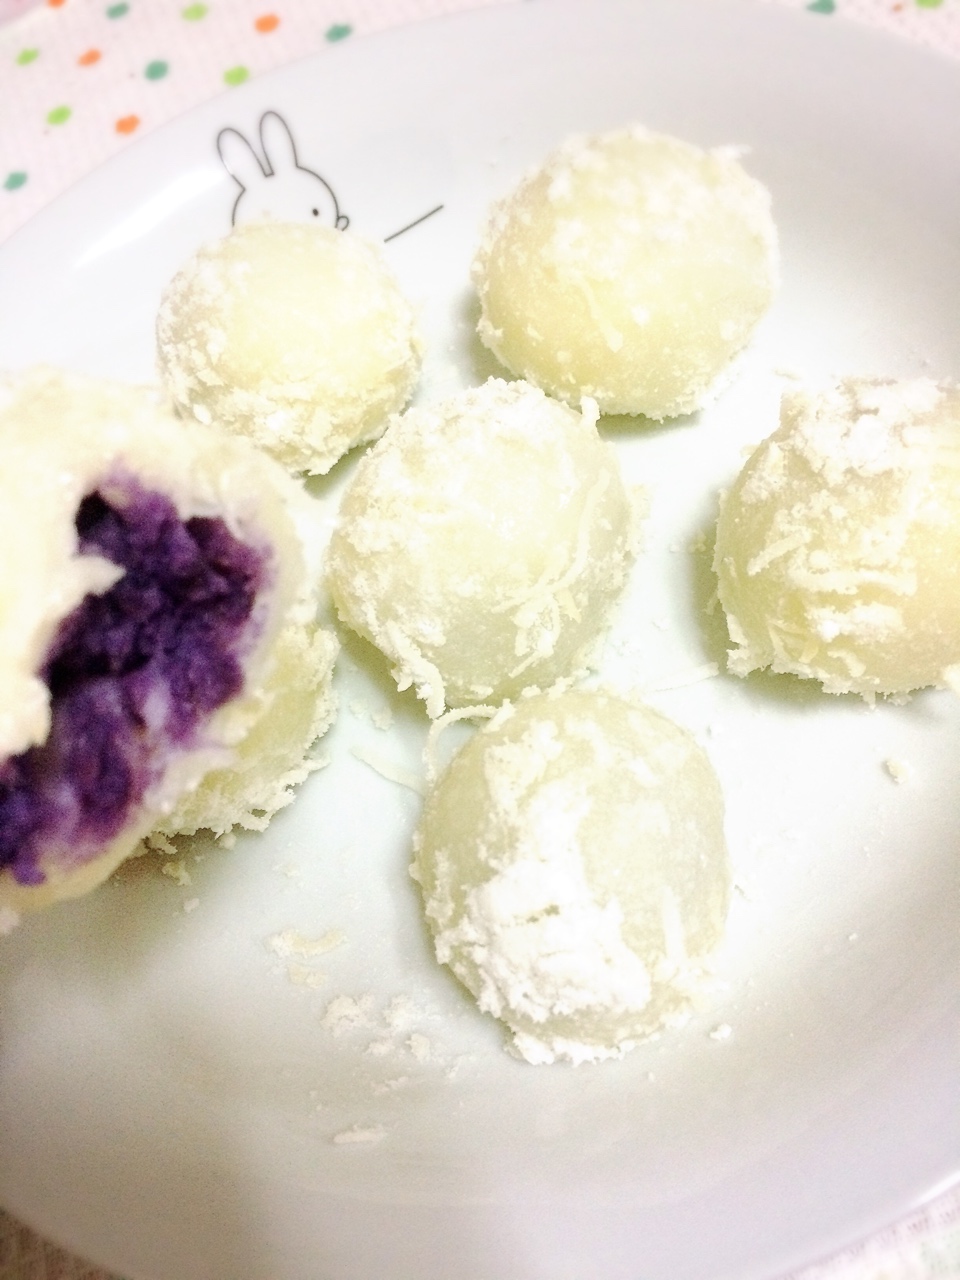 紫薯糯米糍